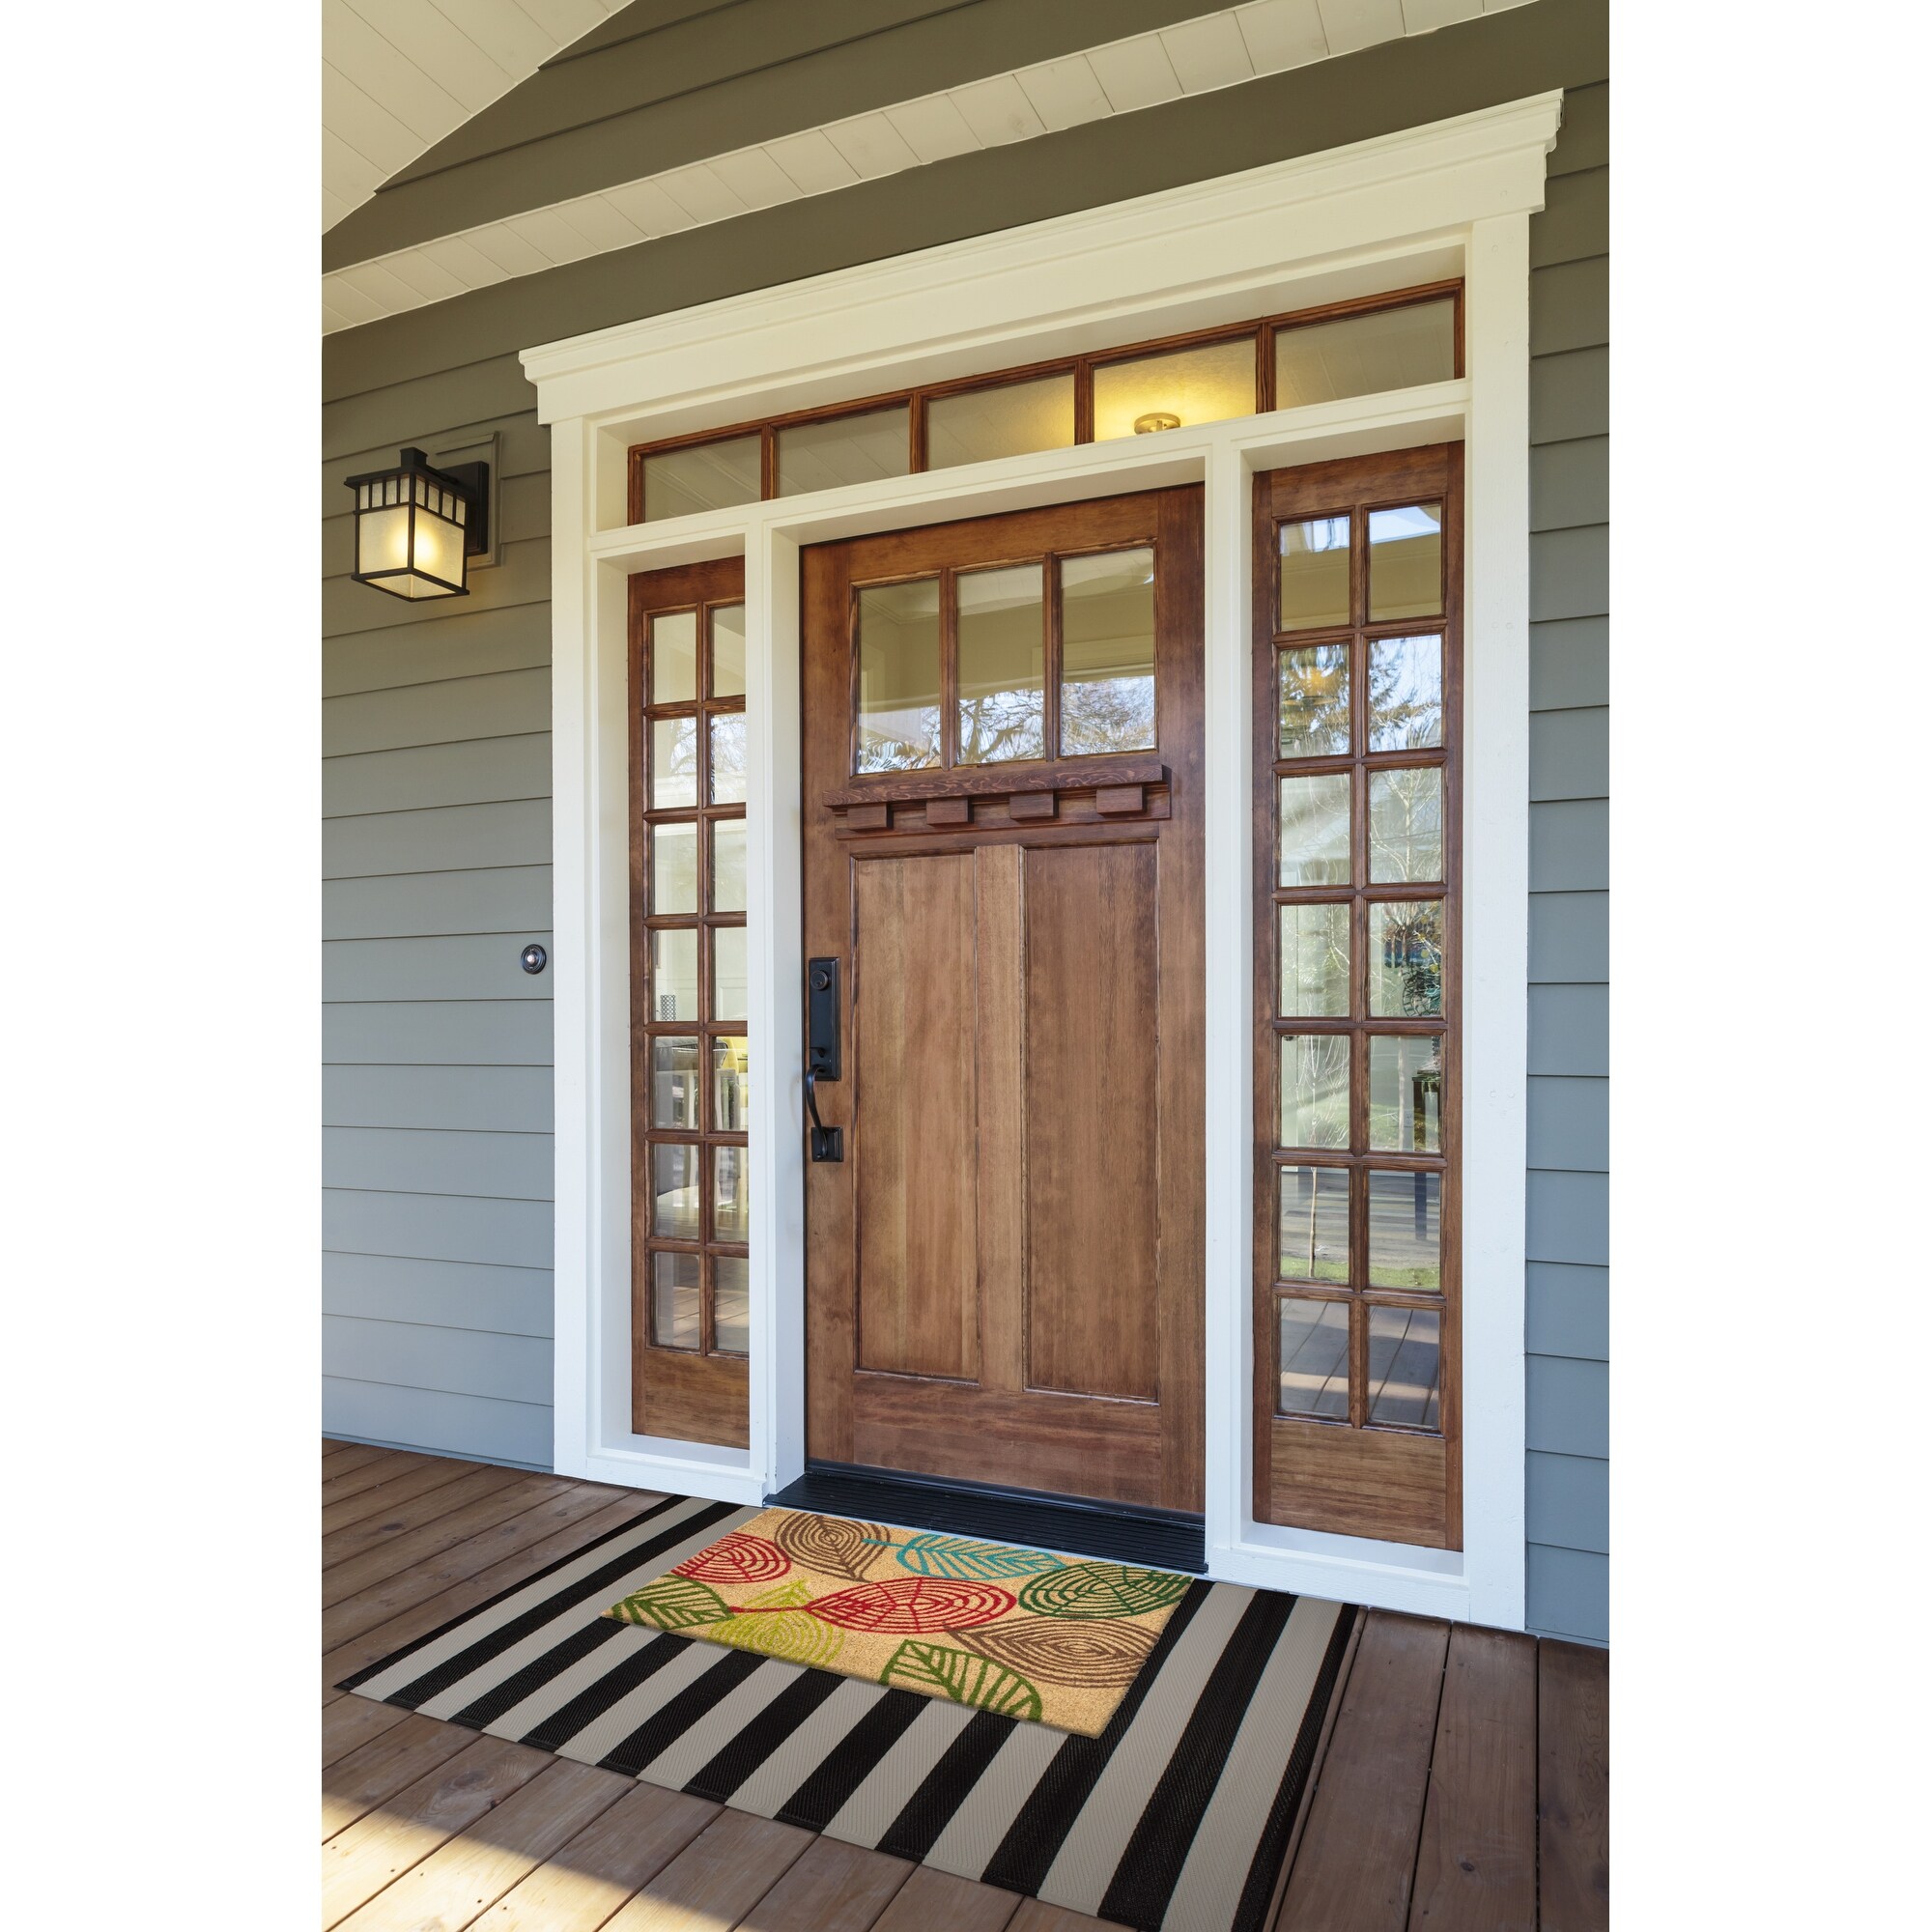 Fab Habitat Modern Non Slip Doormat - Durable, Thin - Natural Coir & Rubber  - Entryway, Front Door, Porch, Patio - Black Border (18 x 30 Non-Slip)